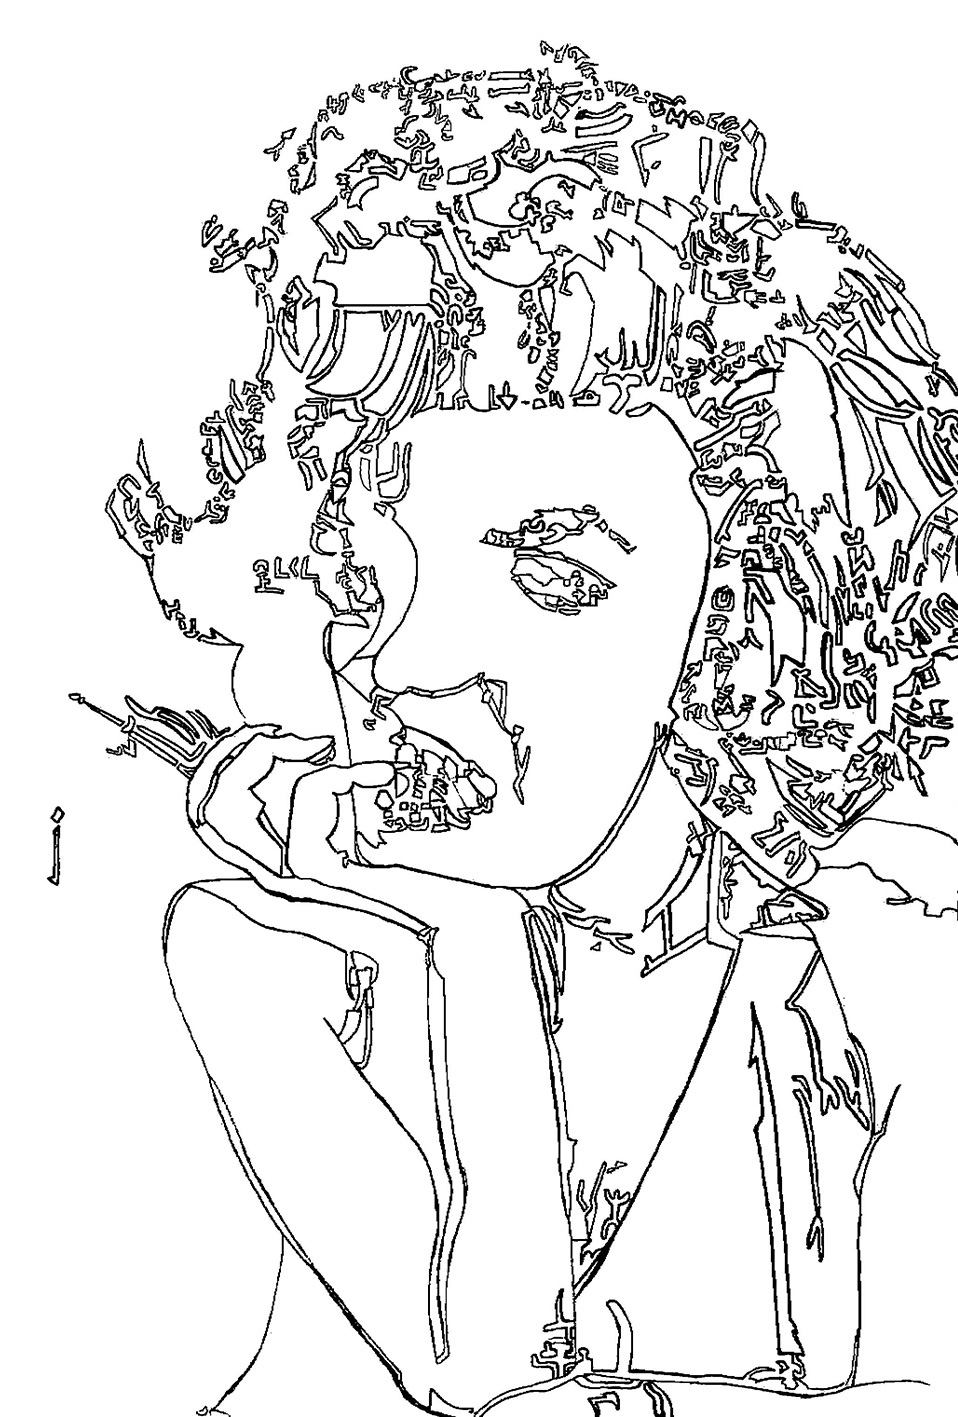 [Works]raitoさんによるマリリン・モンローを描いた線画